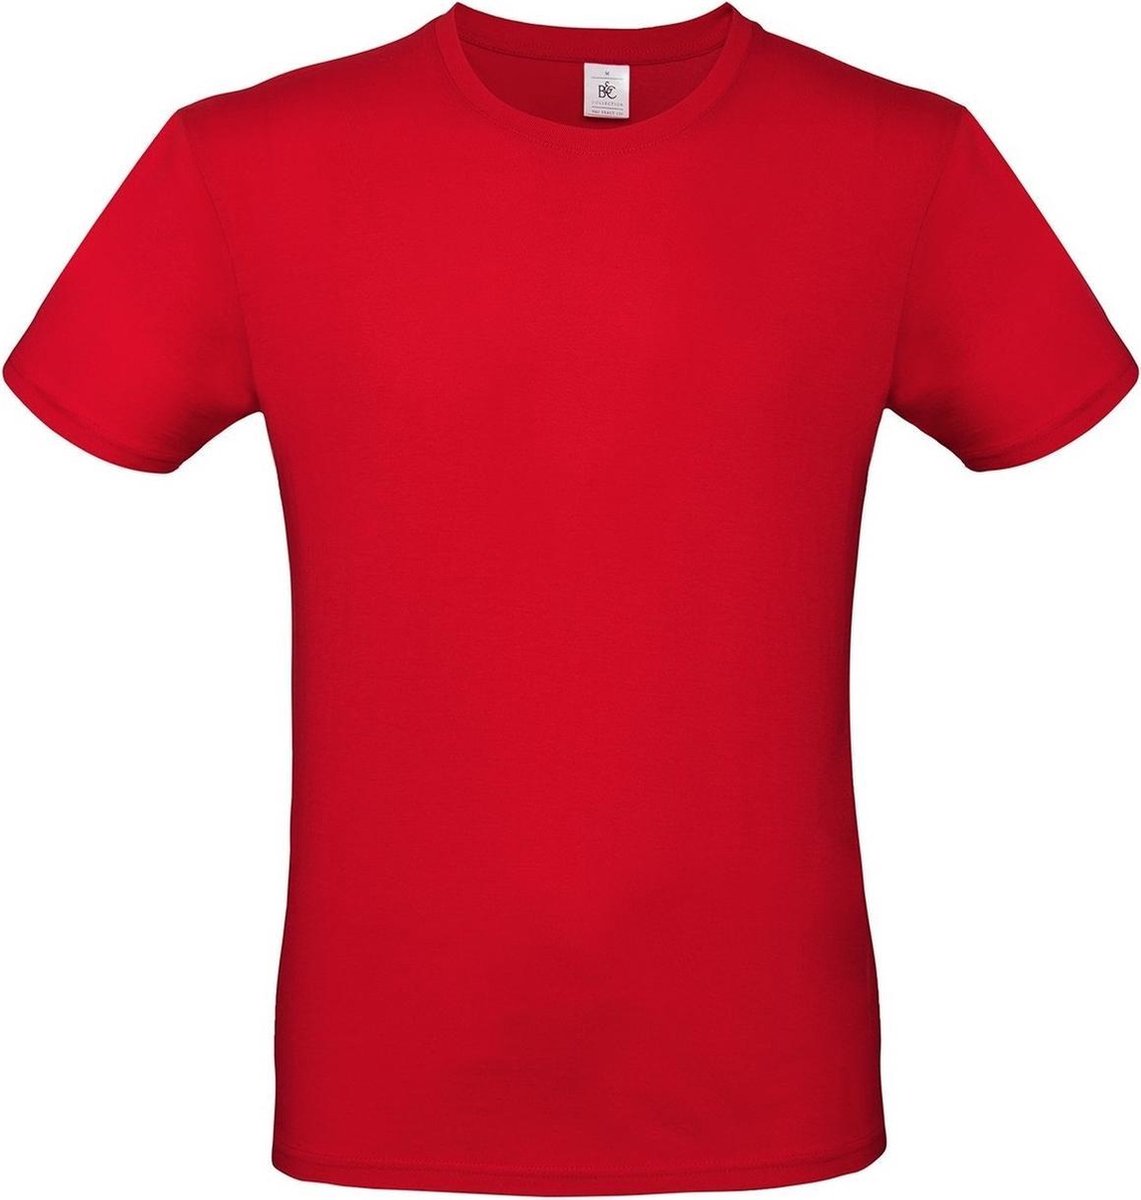 Set van 3x stuks rood basic t-shirt met ronde hals voor heren - katoen - 145 grams - rode shirts / kleding, maat: XL (54)